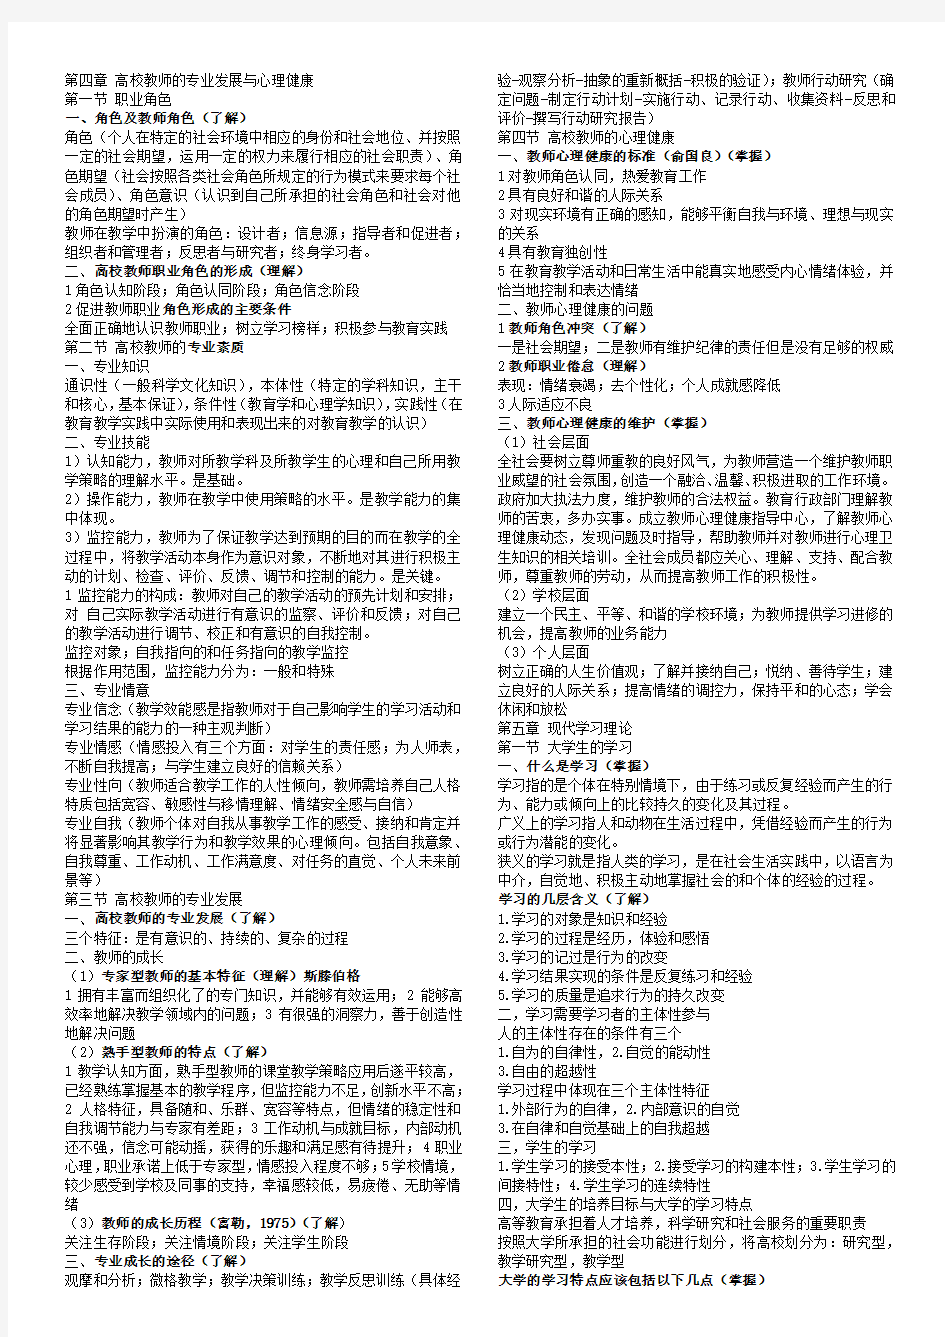 2015年河北省高校教师资格证考试知识点总结-心理学(第4-5章)对应2015年最新教材和大纲